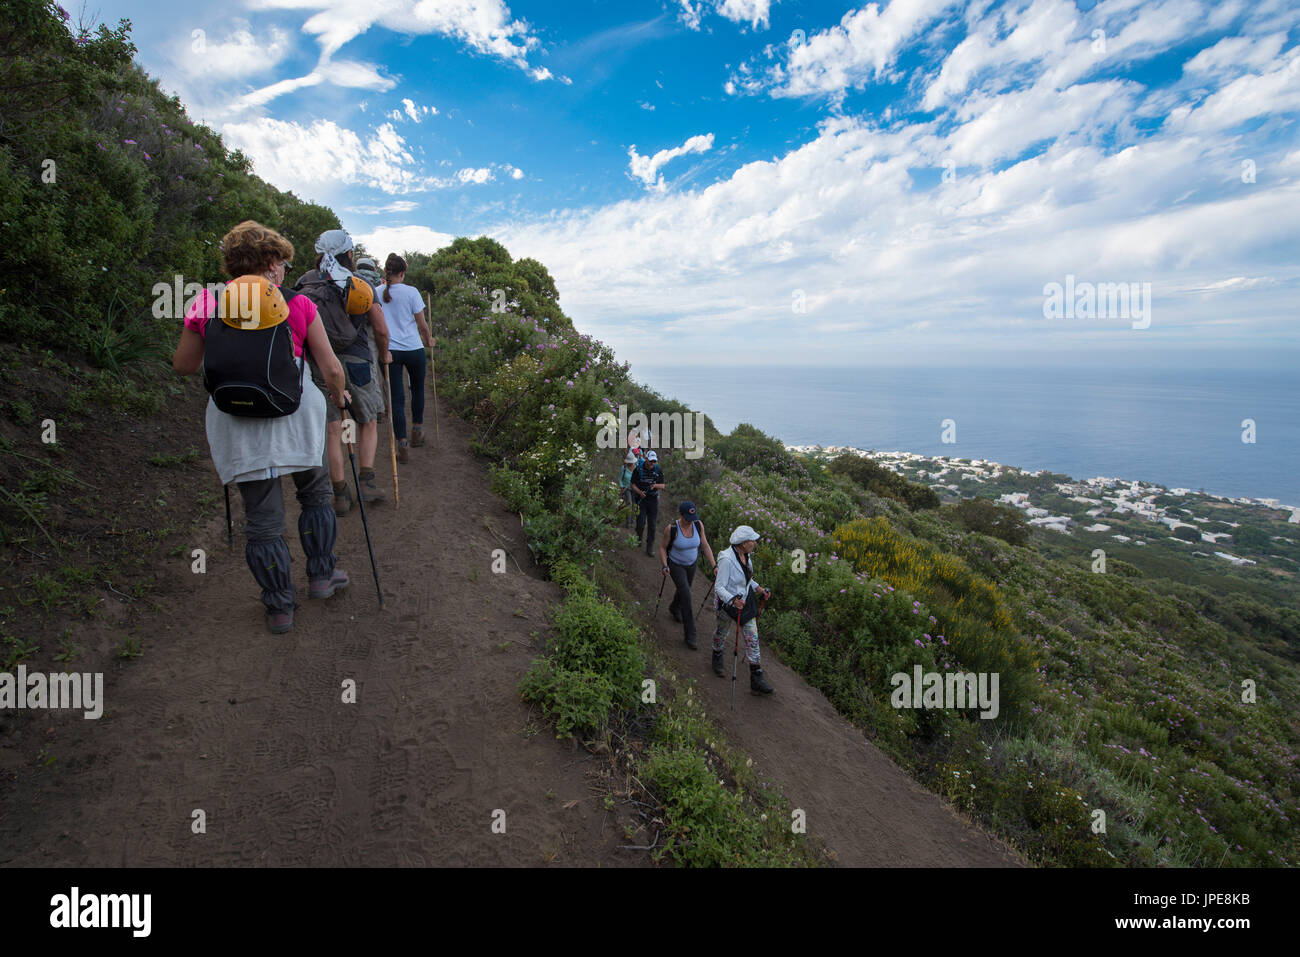 Trekking auf den Gipfel des Vulkans Stromboli Insel, Messina, Sizilien, Italien. Es ist ein langer und harter Weg erreichen den Gipfel des Vulkans. Stockfoto